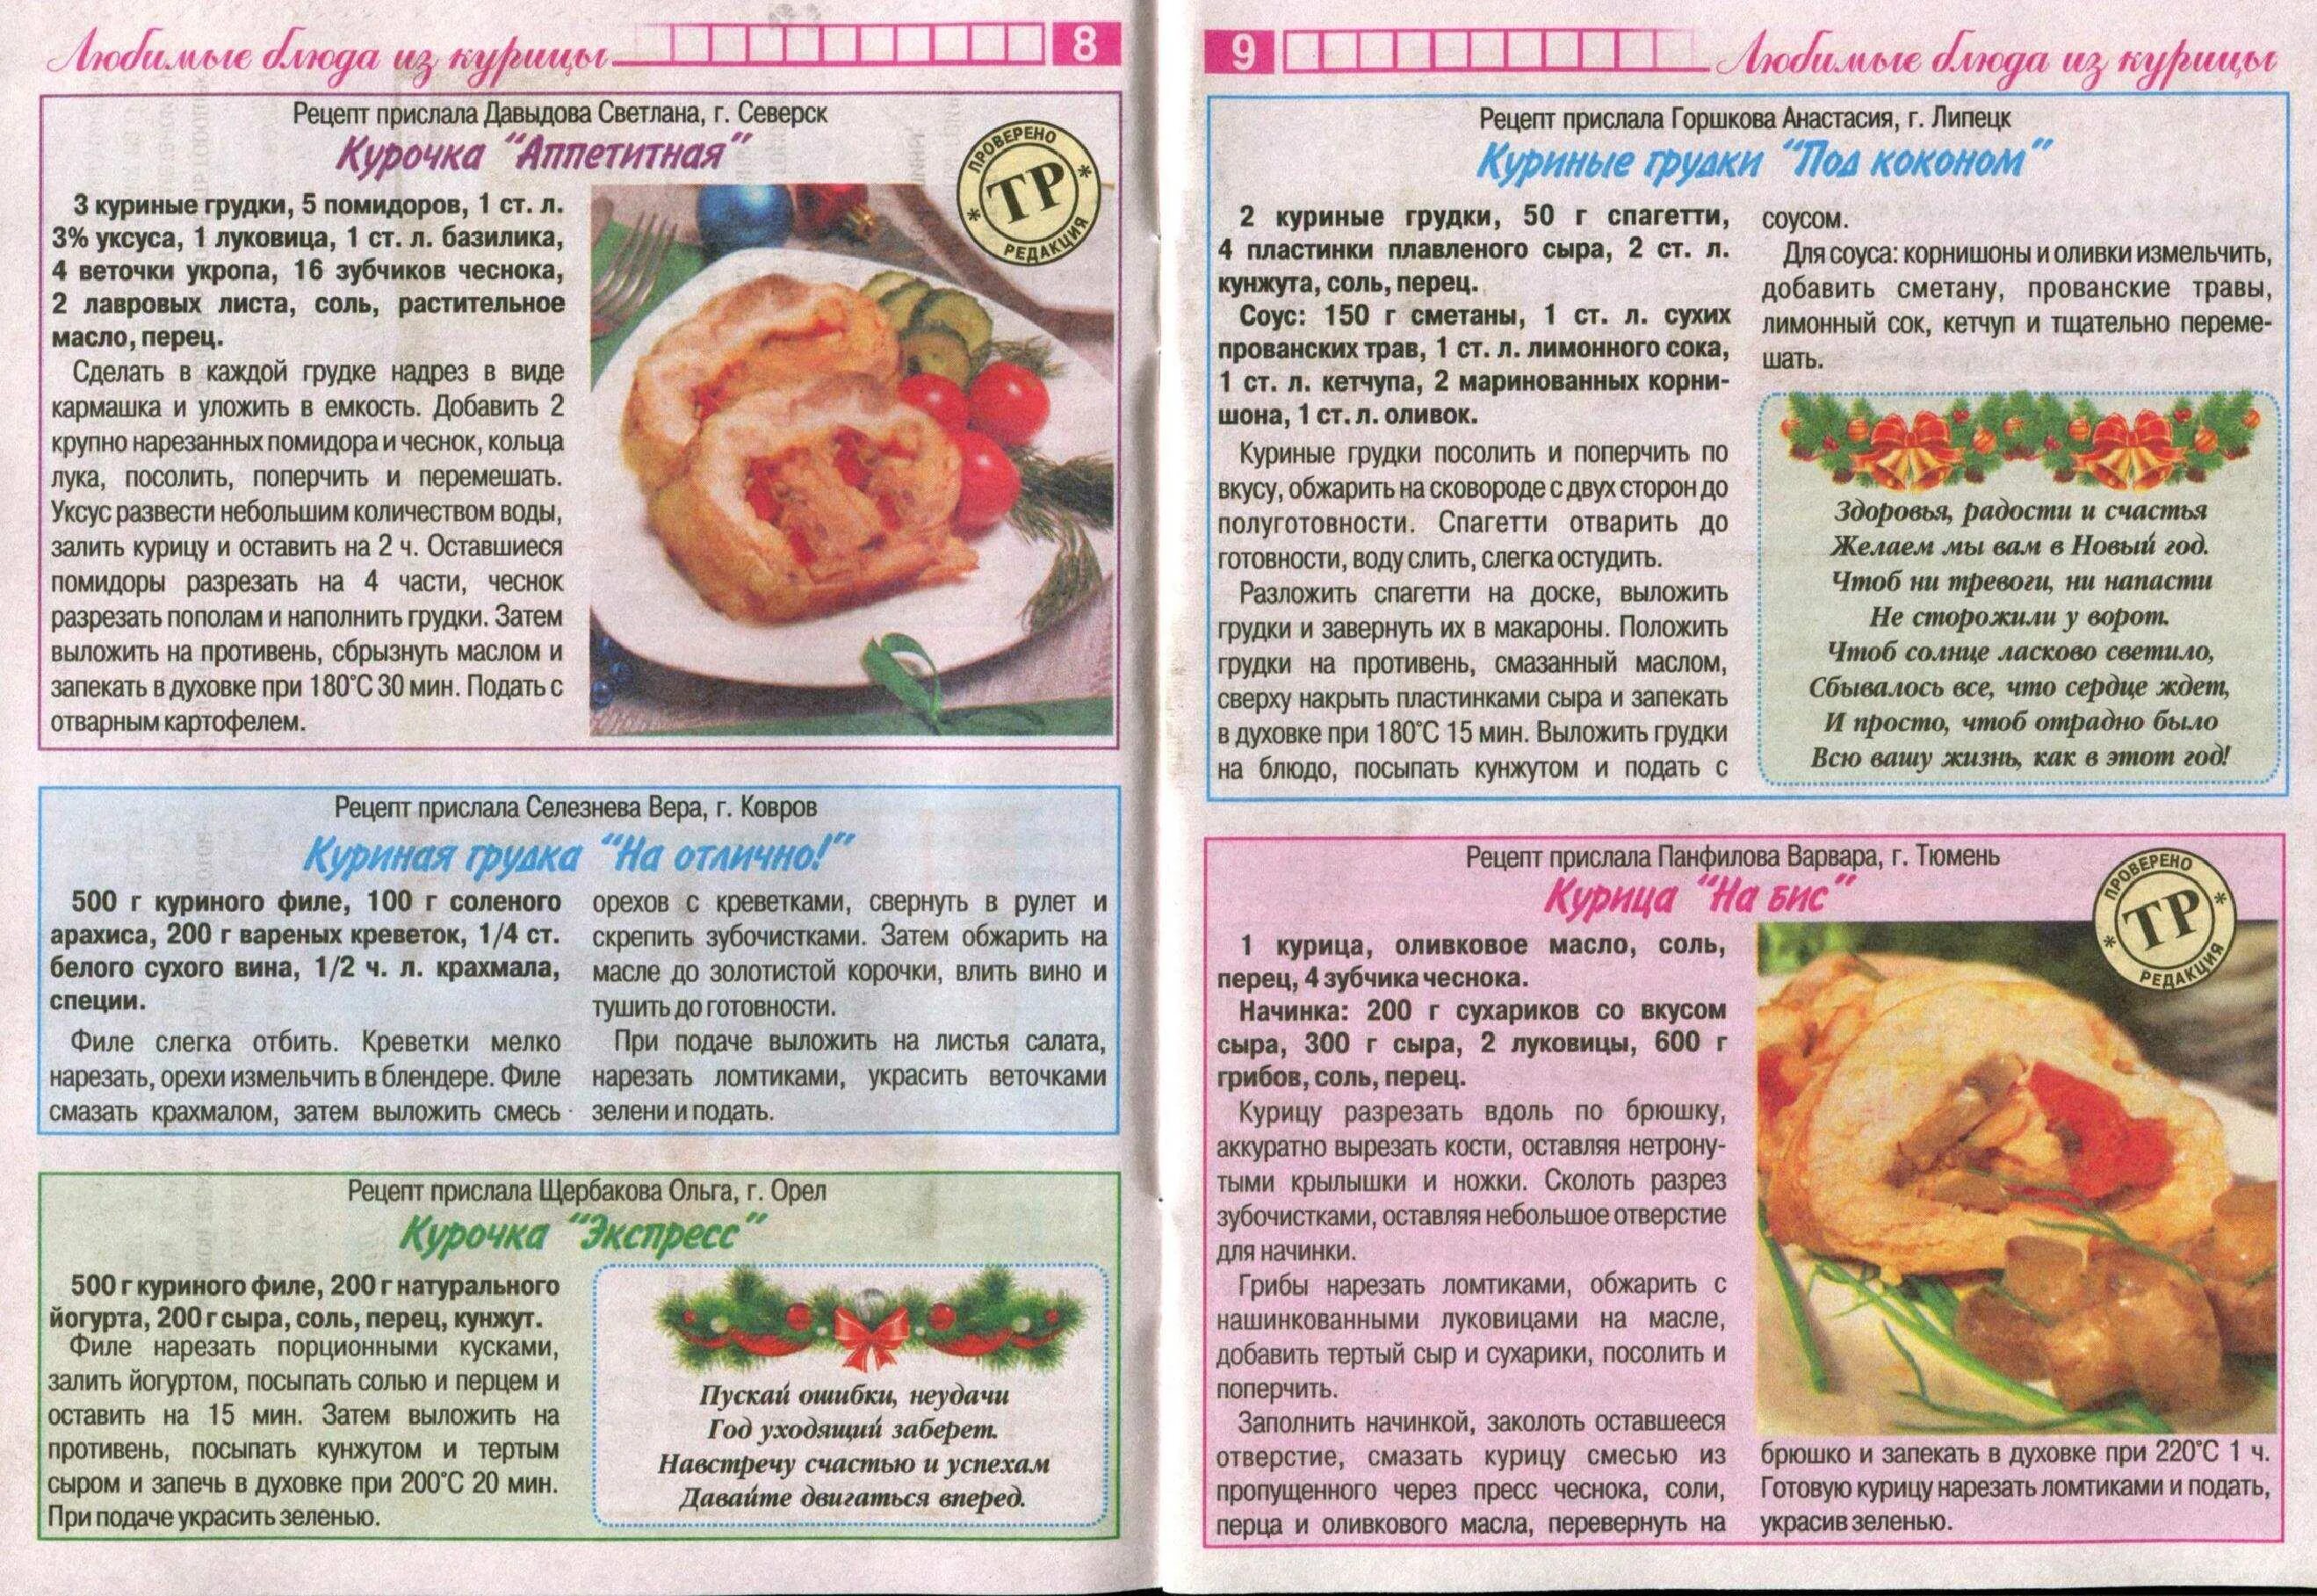 Картинки для рецептов кулинарии. Рецепты блюд в картинках с описанием. Рецепты в картинках с описанием. Кулинария рецепты с фотографиями. Напечатанные рецепты